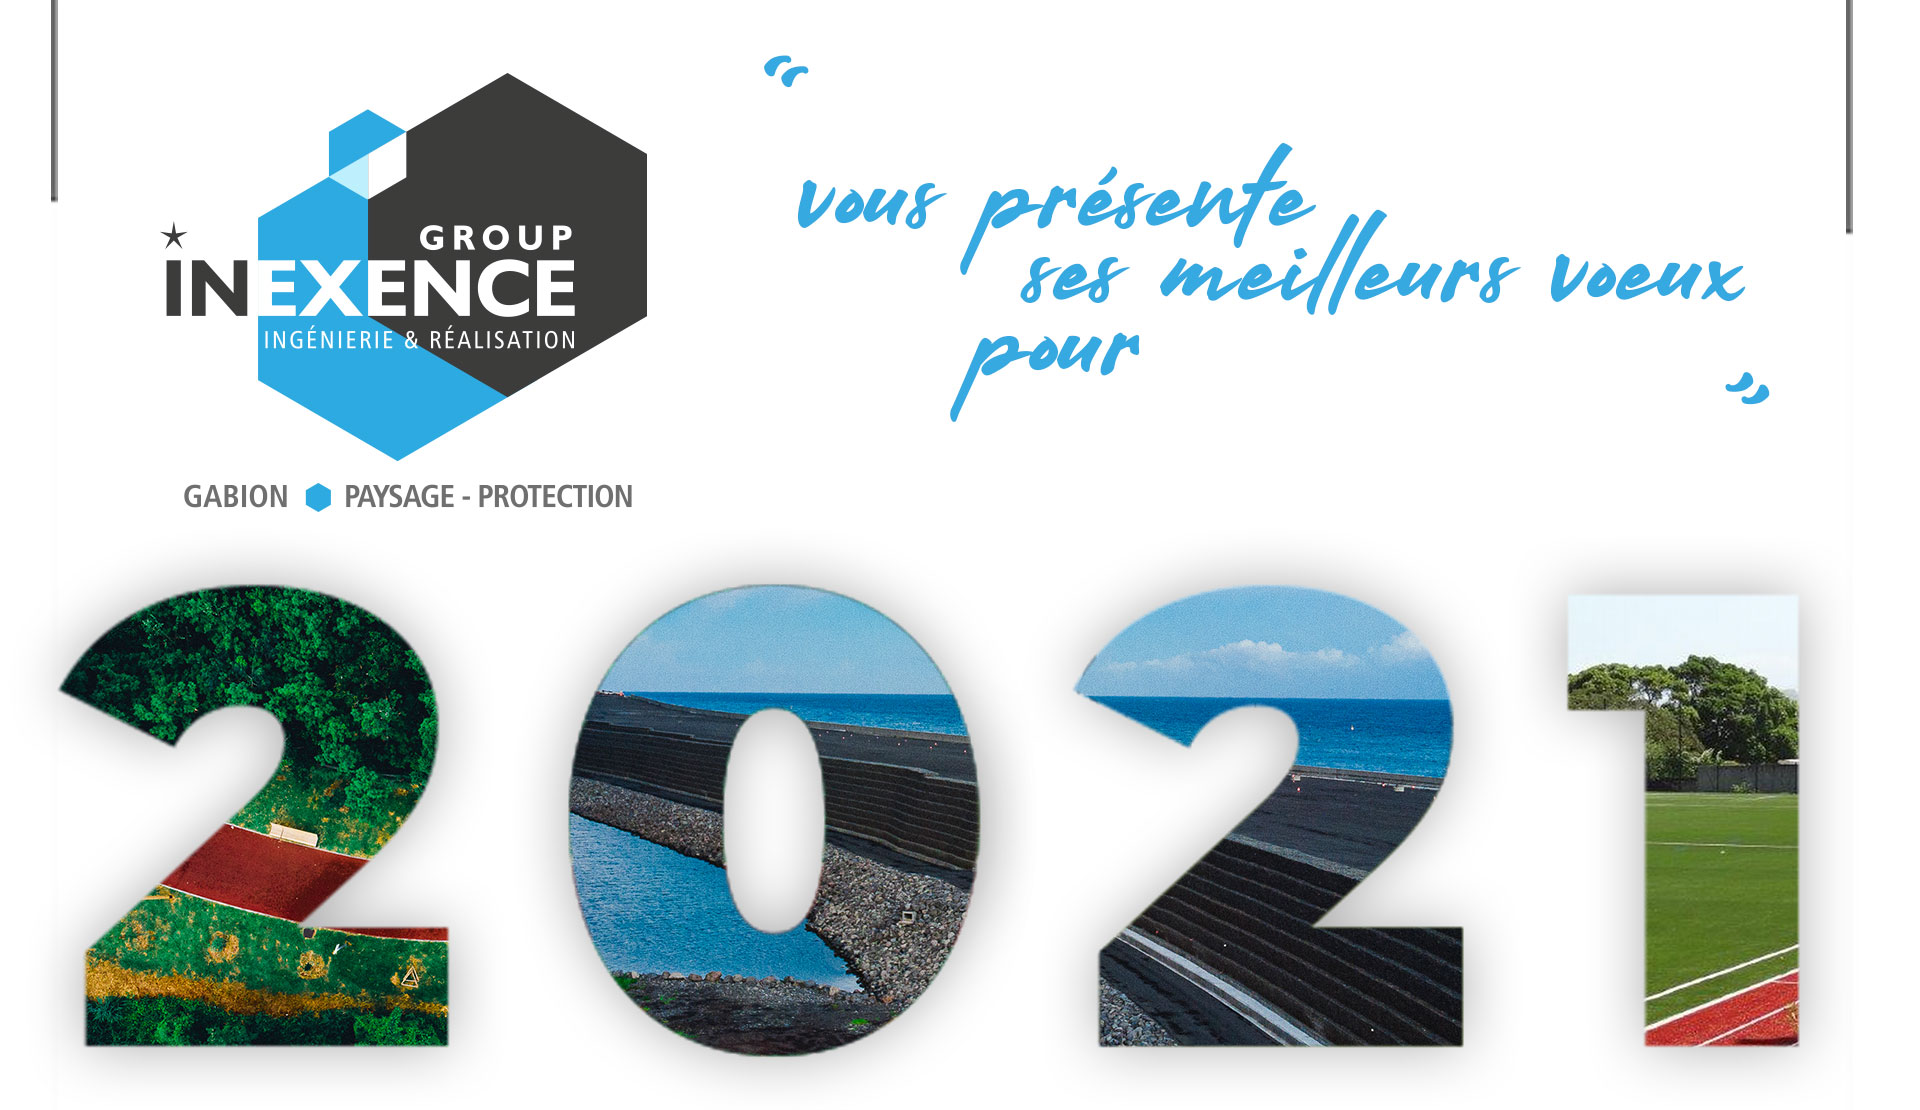 Thierry RENARD et tous les collaborateurs des entreprises de INEXENCE Group vous présentent leurs Meilleurs Vœux pour 2021